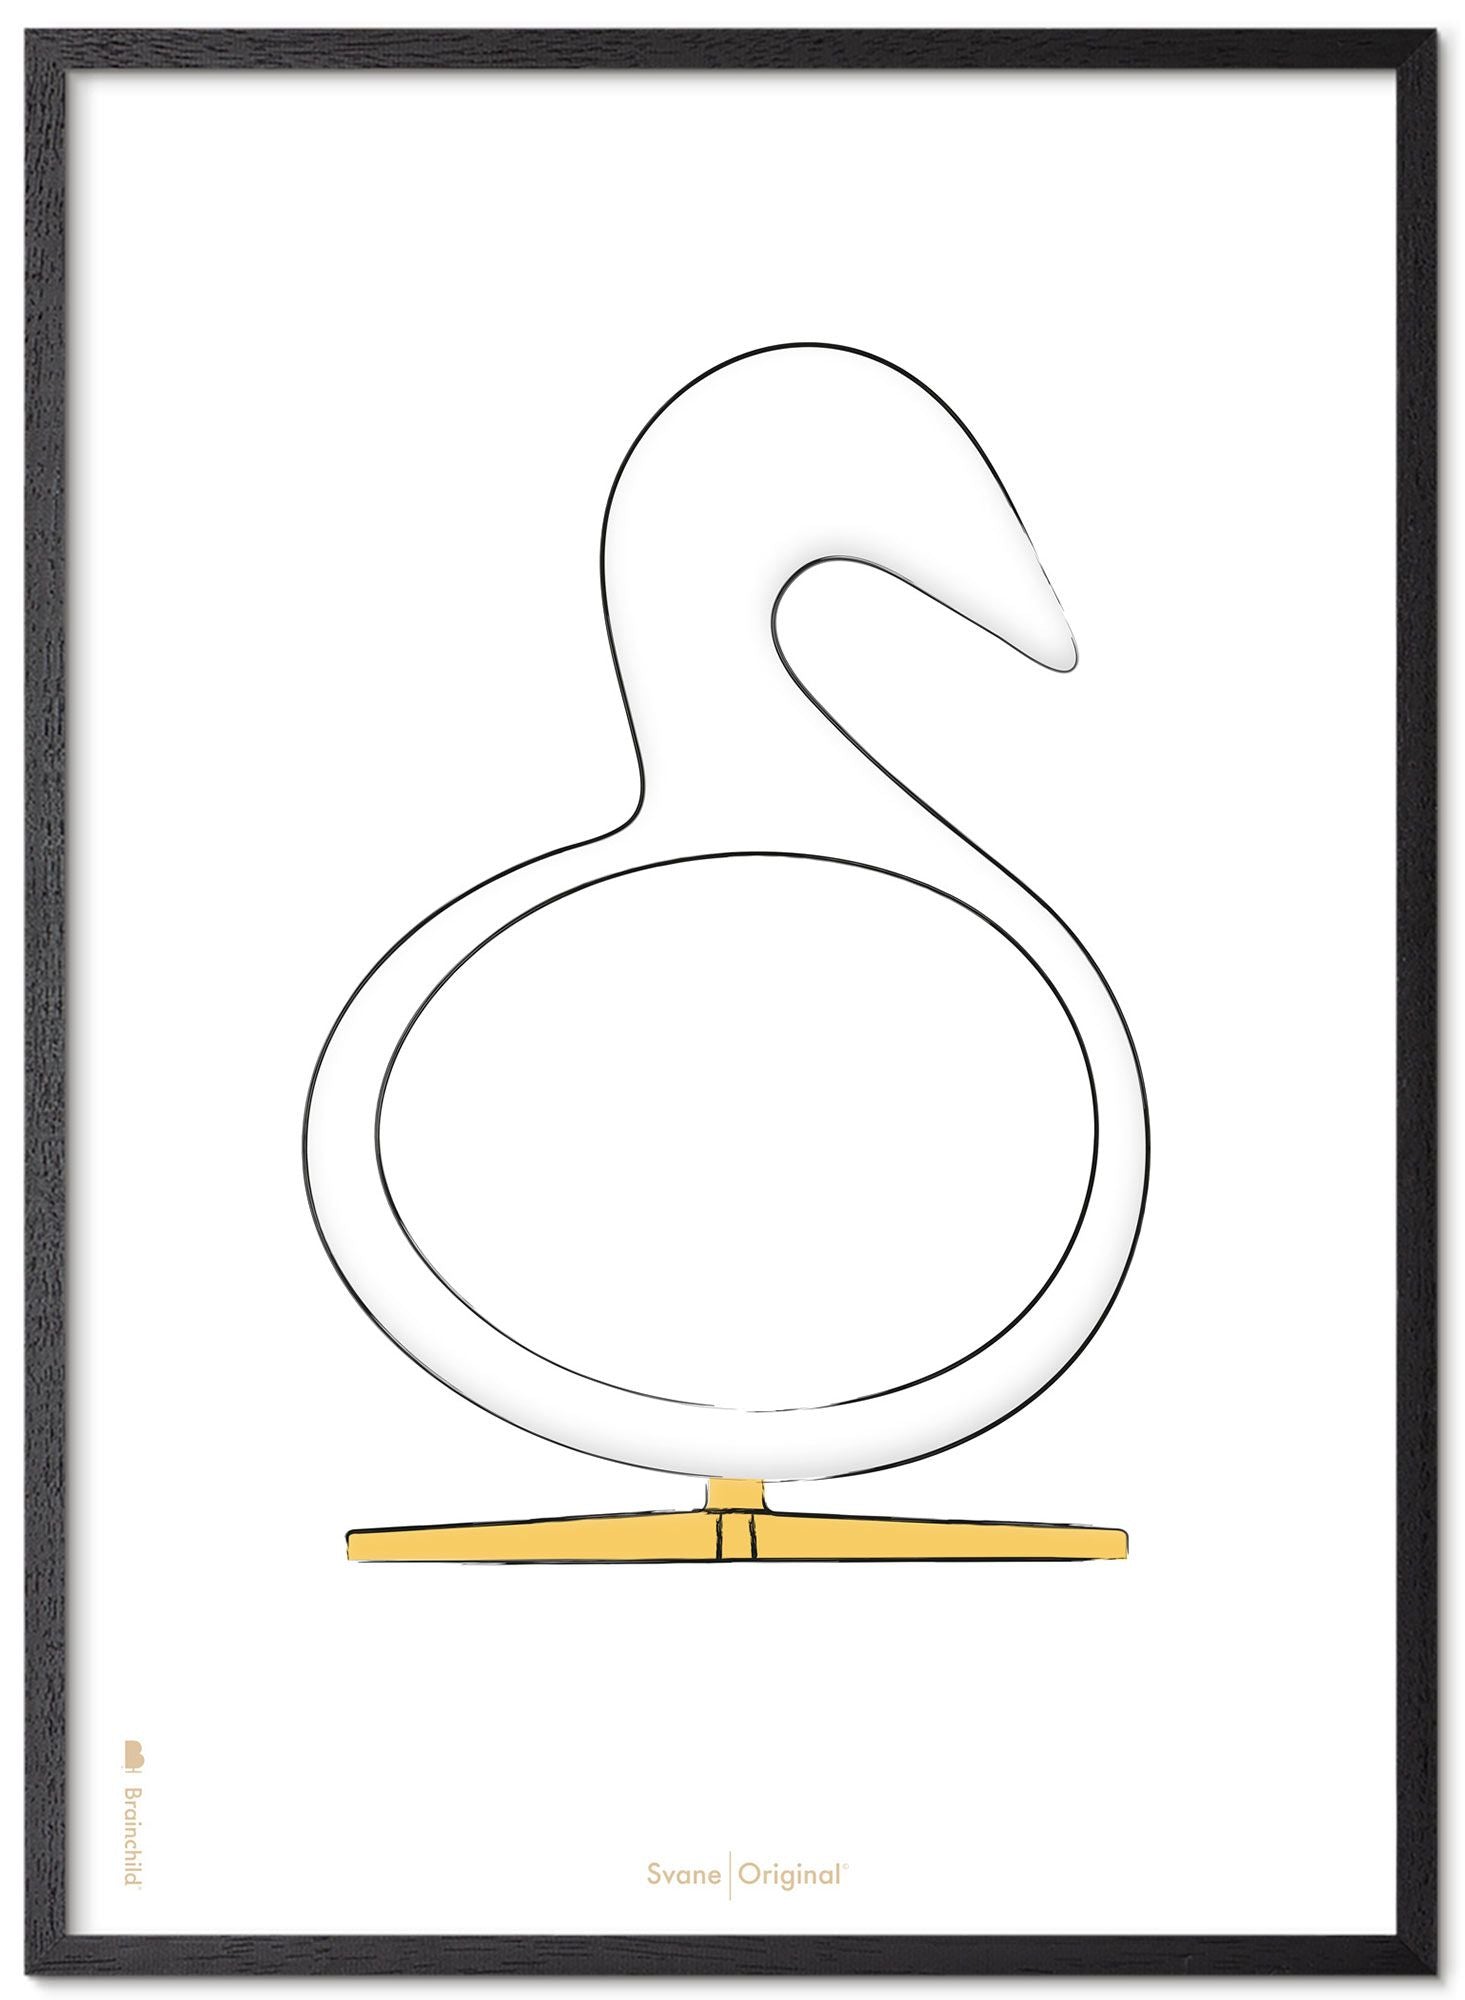 Swan Croquis de conception du cygne